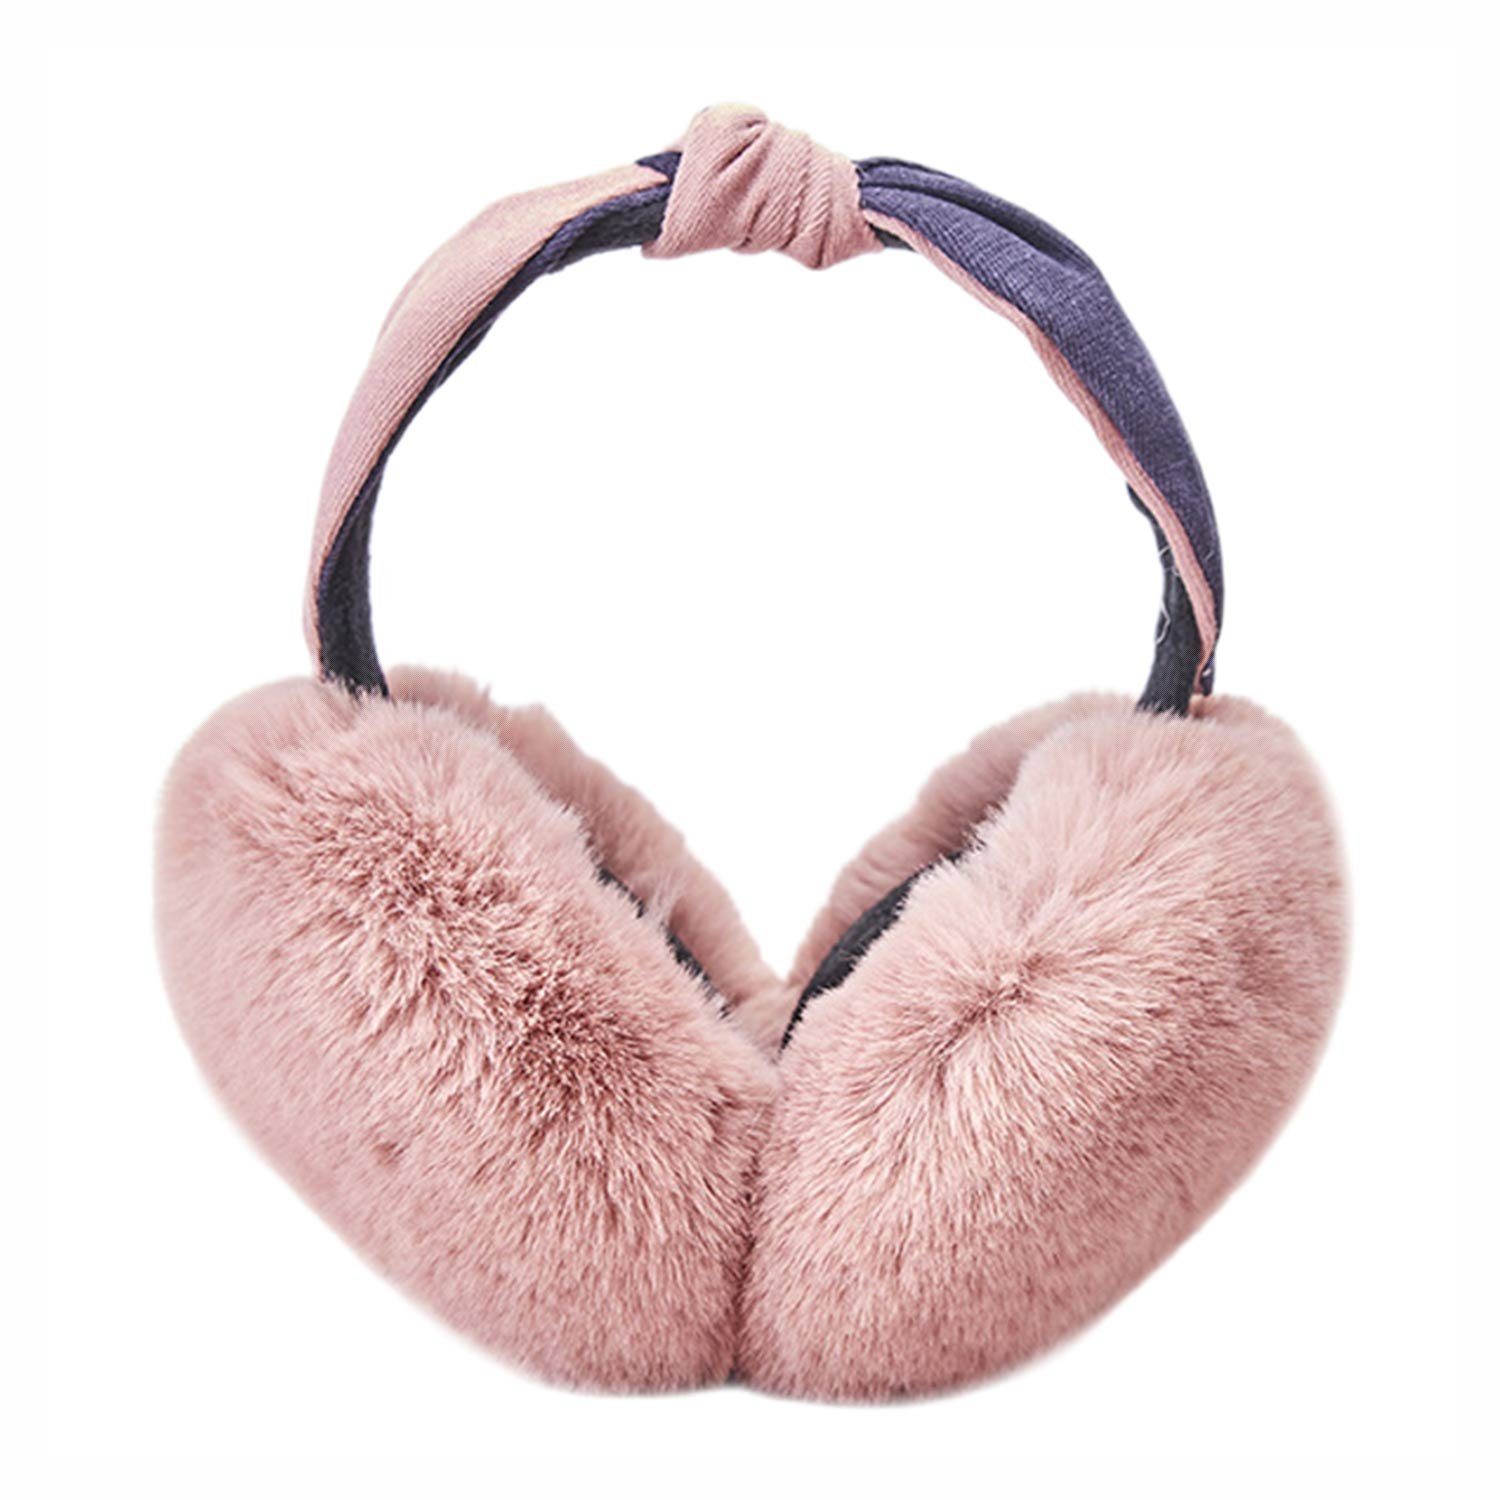 MAGICSHE Ohrenwärmer Winter Ohrenschützer für Damen flauschig und weich Rosa | Ohrenmützen